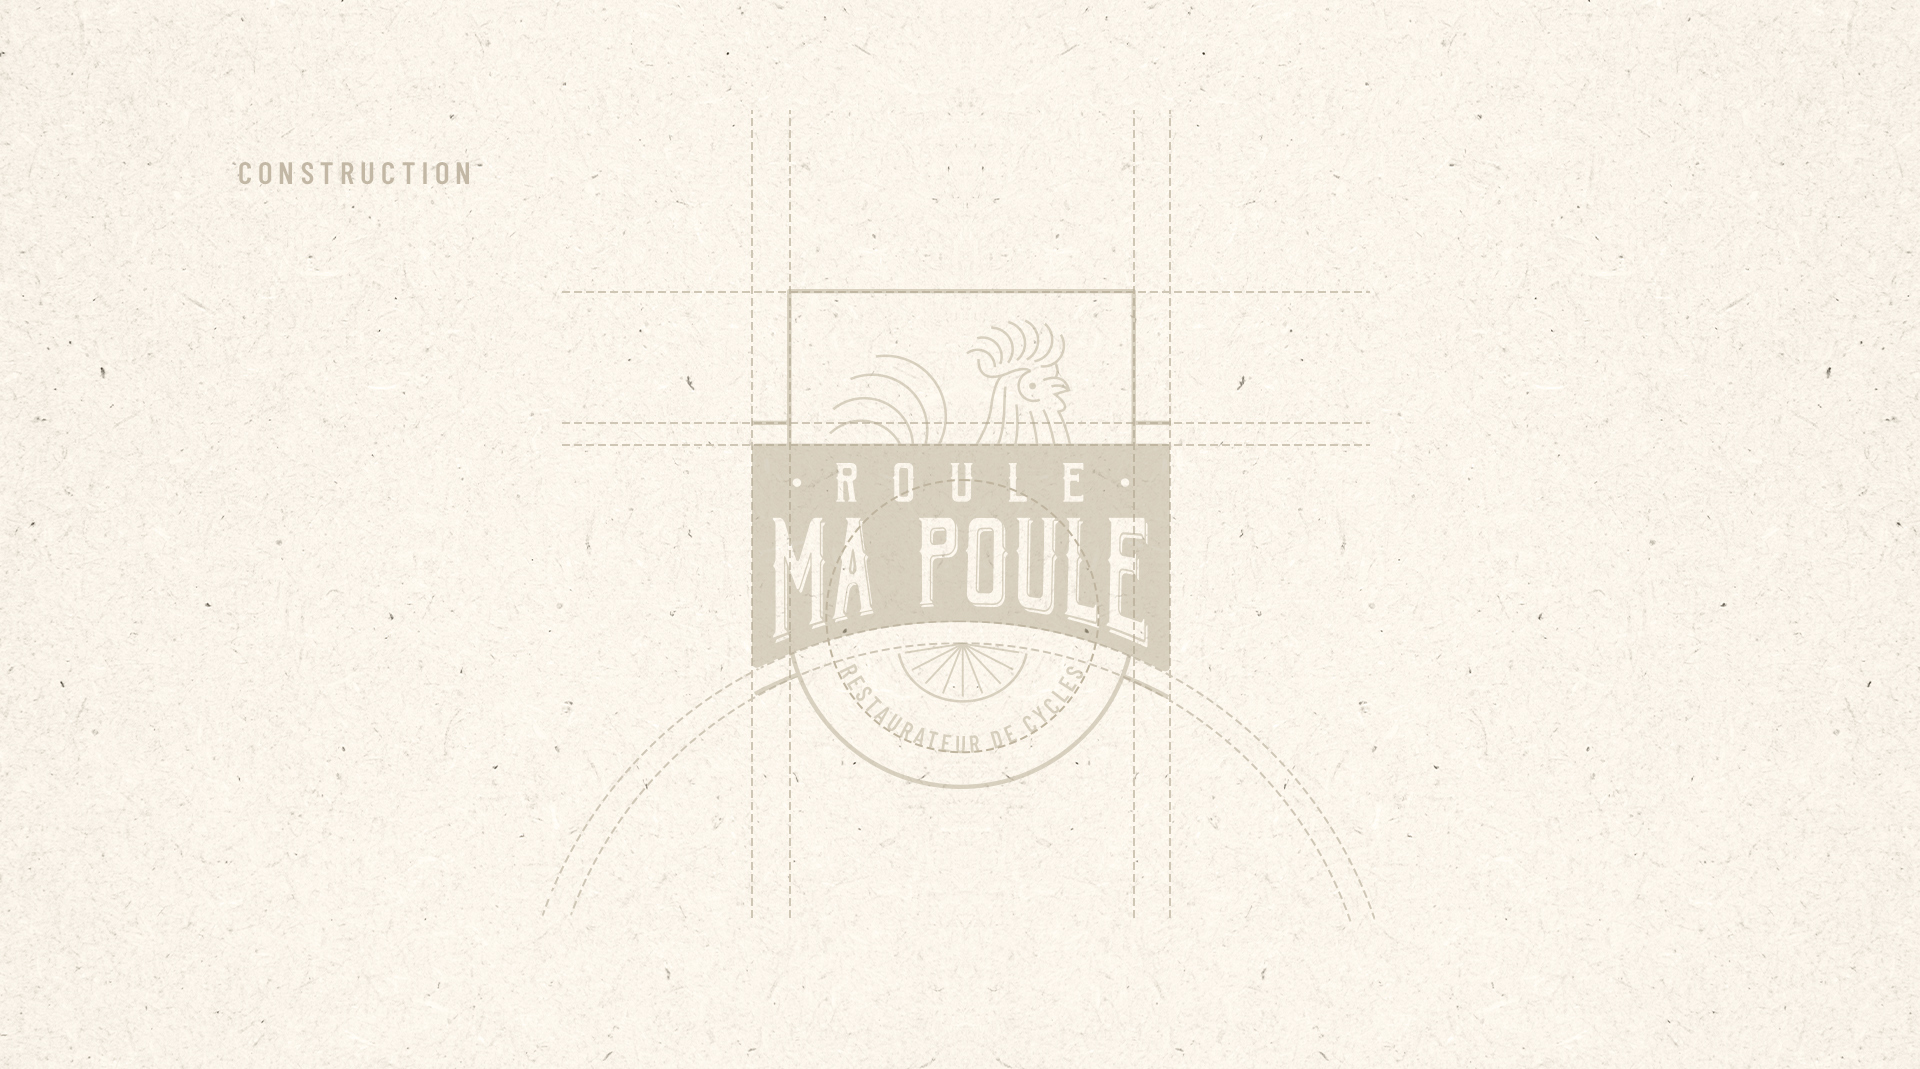 Roule Ma Poule branding